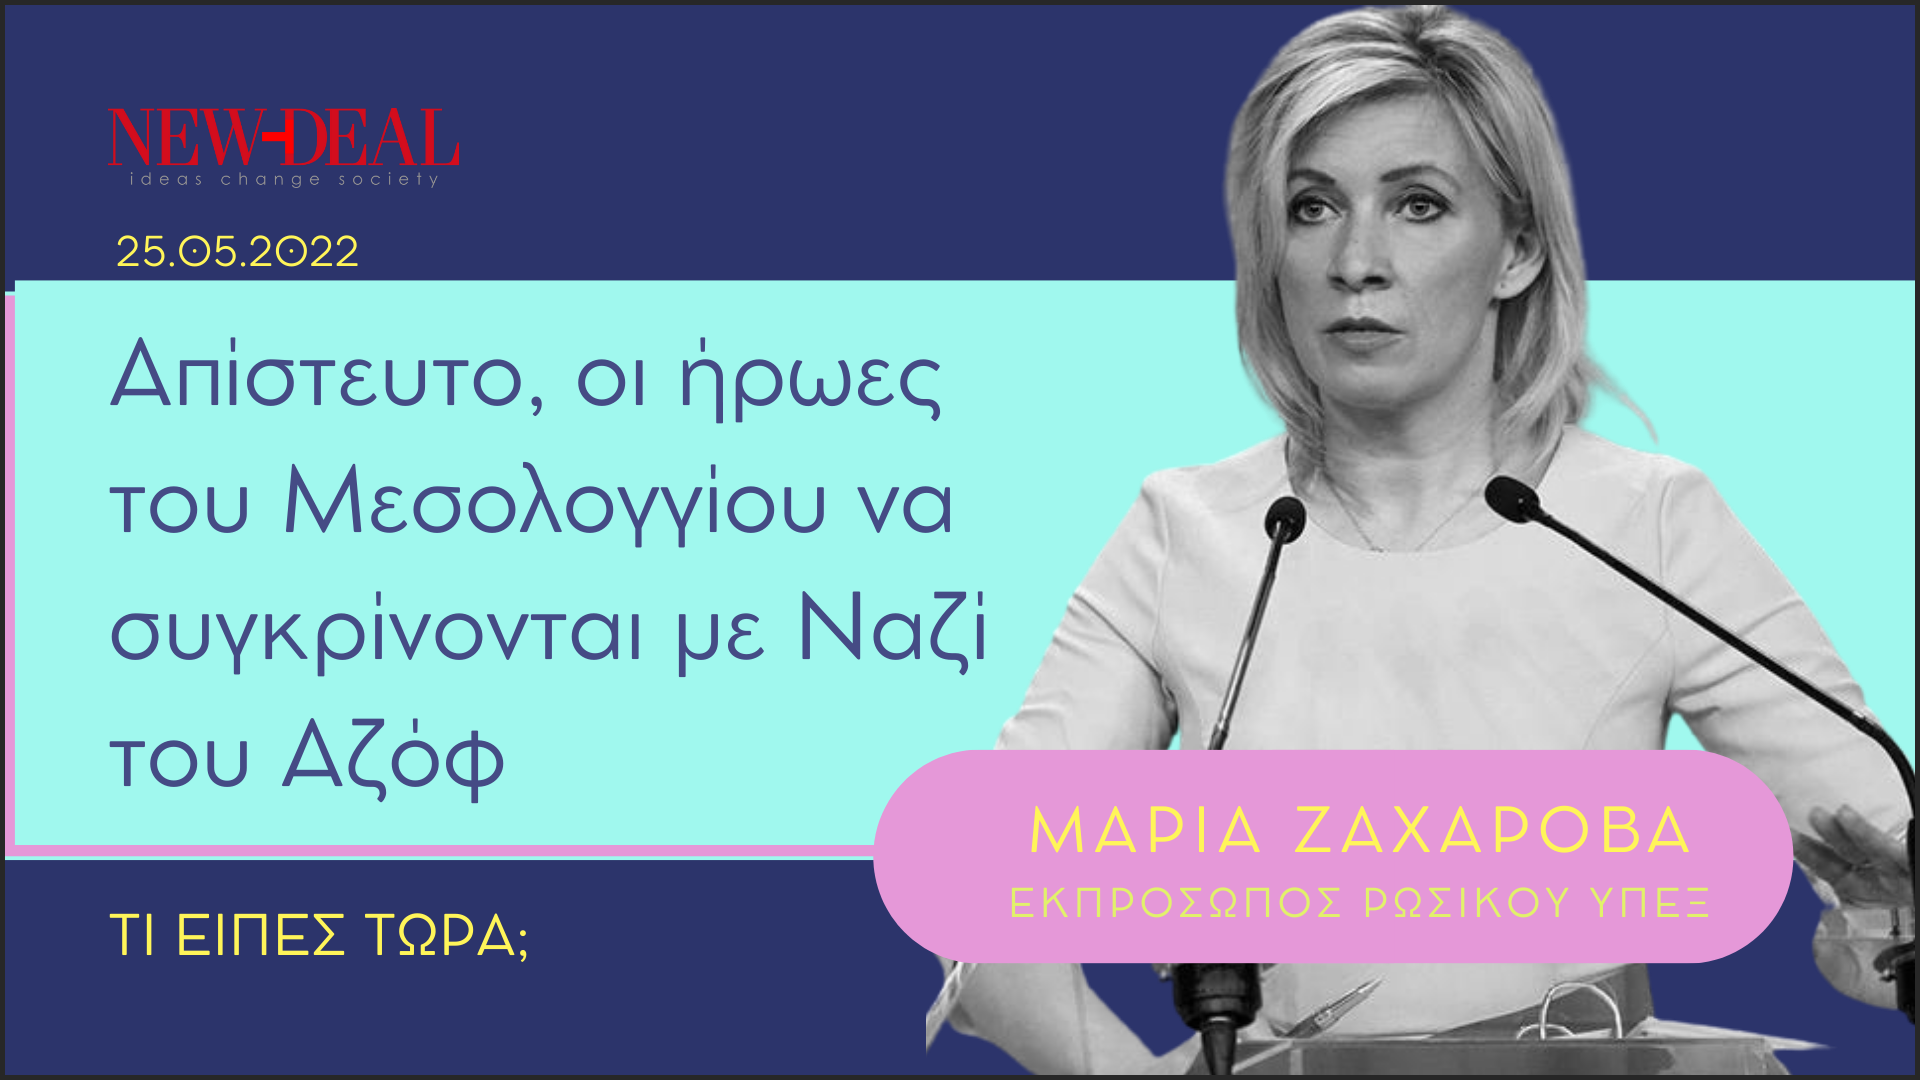 Μαρία Ζαχάροβα | Απίστευτο οι ήρωες του Μεσολογγίου να συγκρίνονται με Ναζί του Αζόφ new deal